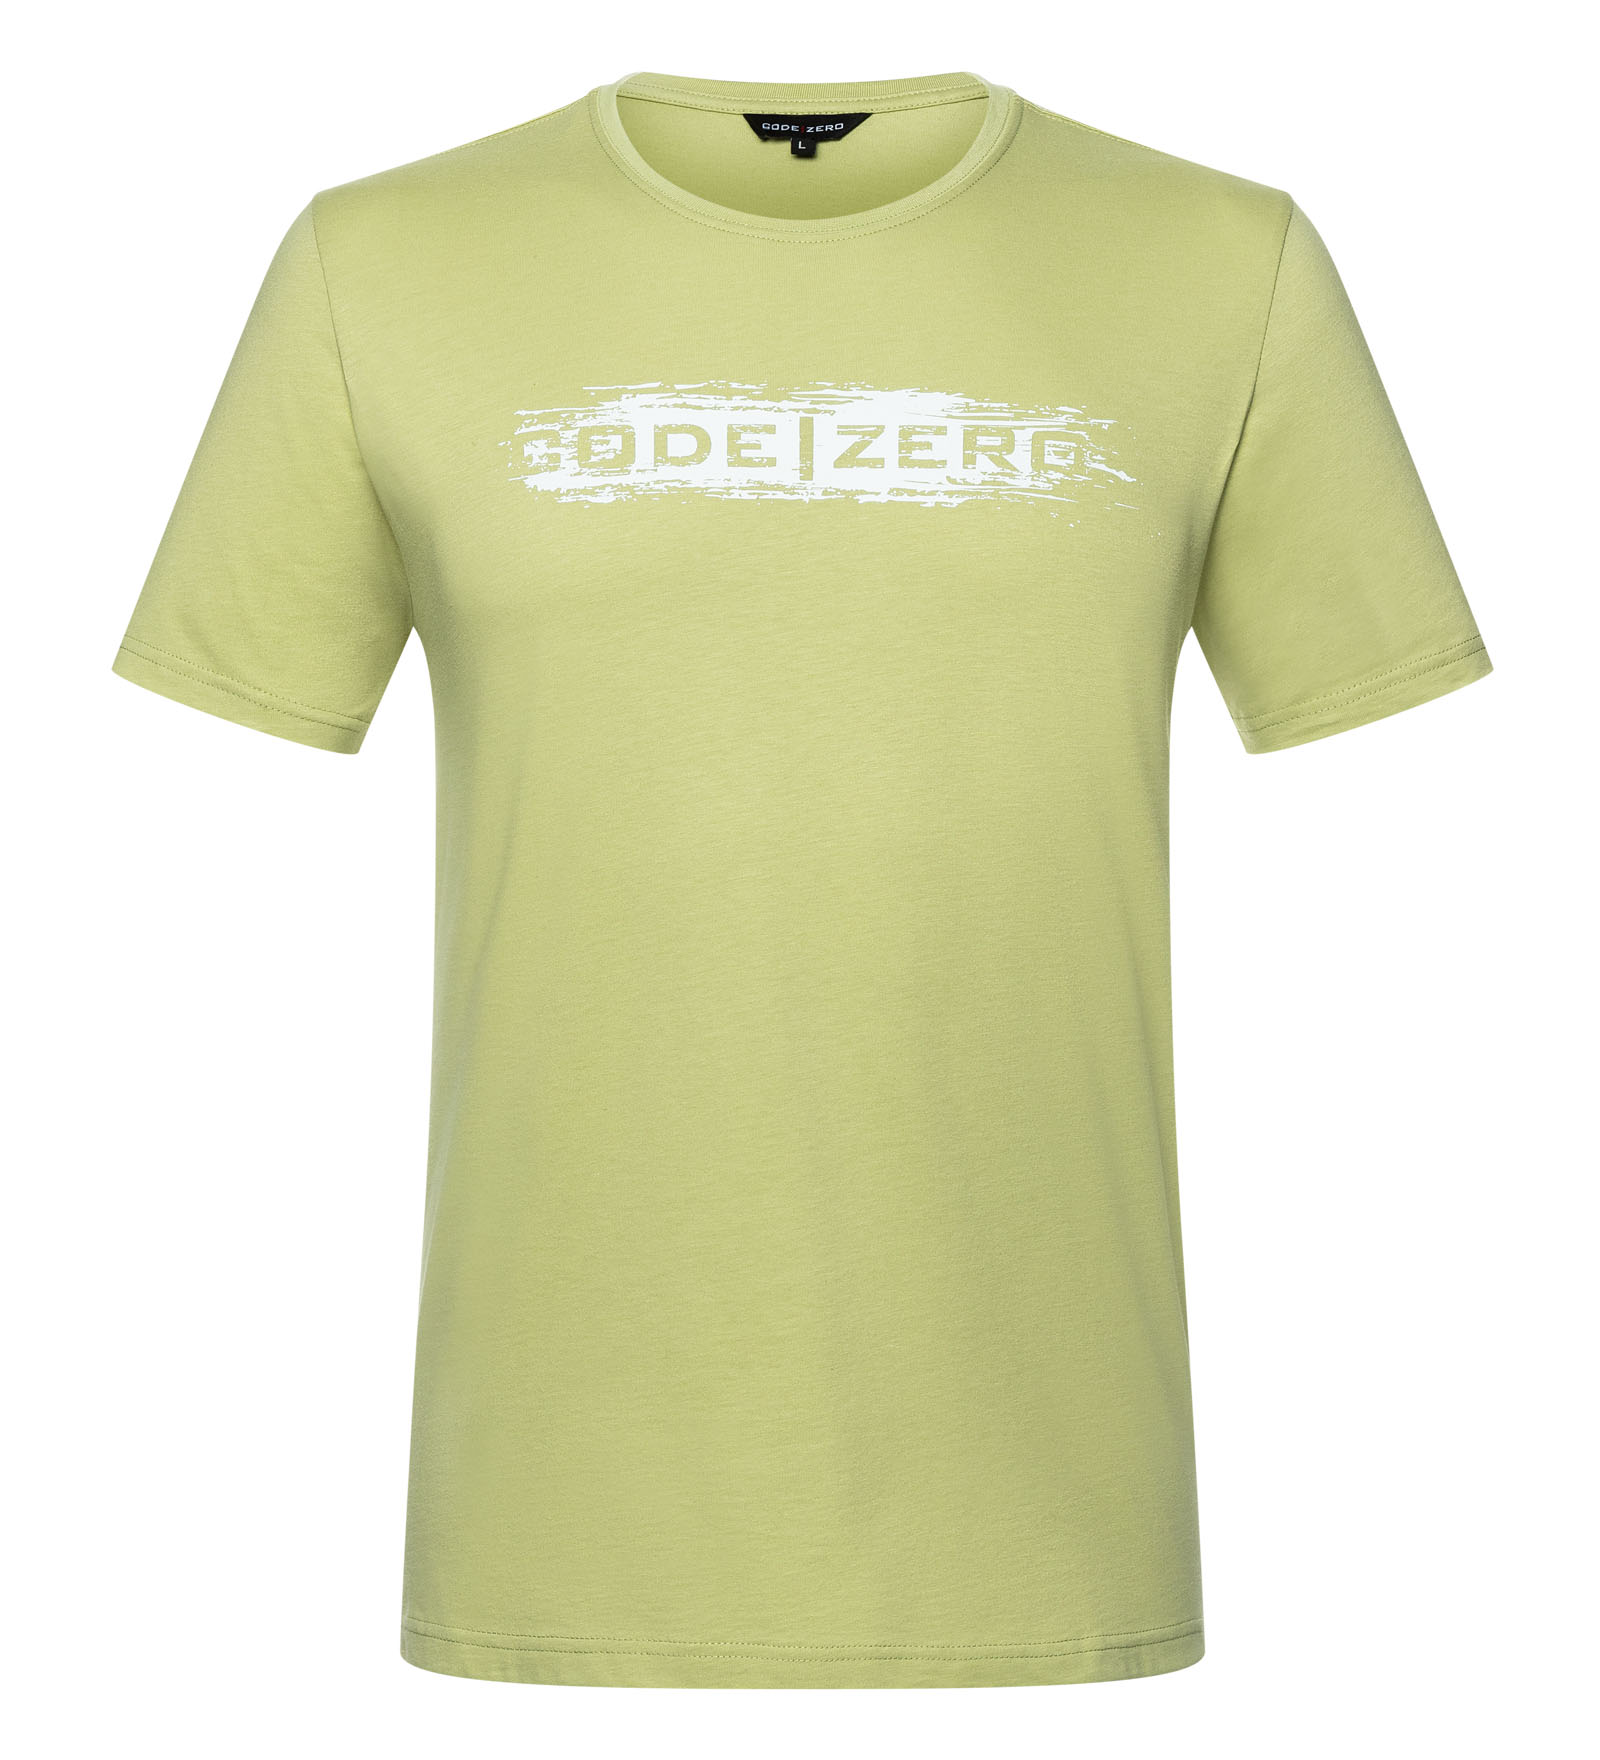 T-Shirt Herren Painted grün XXL CODE-ZERO von CODE-ZERO